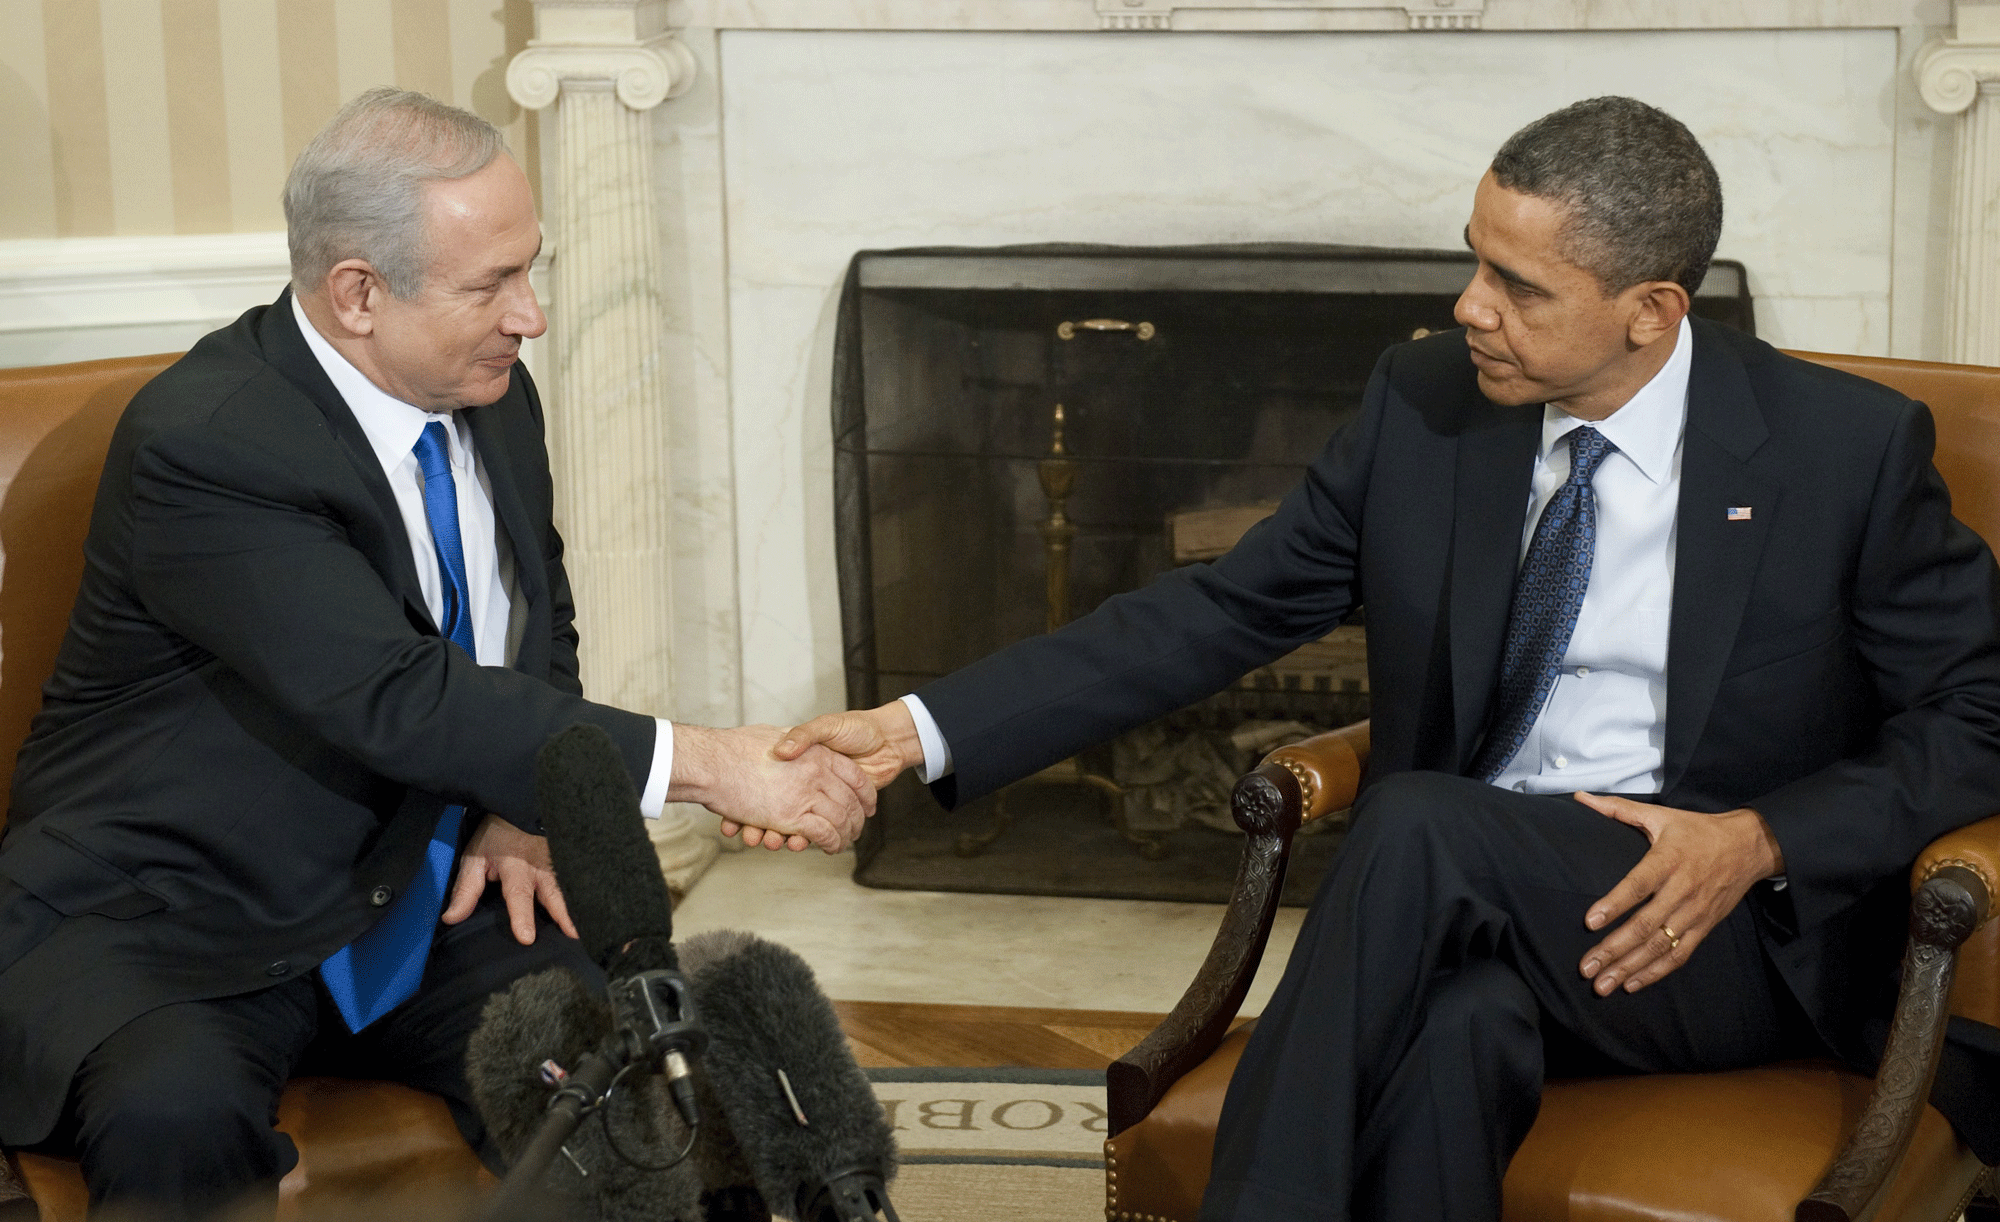 Barack Obama et Benjamin Netanyahu, lors d'une visite de ce dernier à la Maison-Blanche en mars 2012. [Saul Loeb]